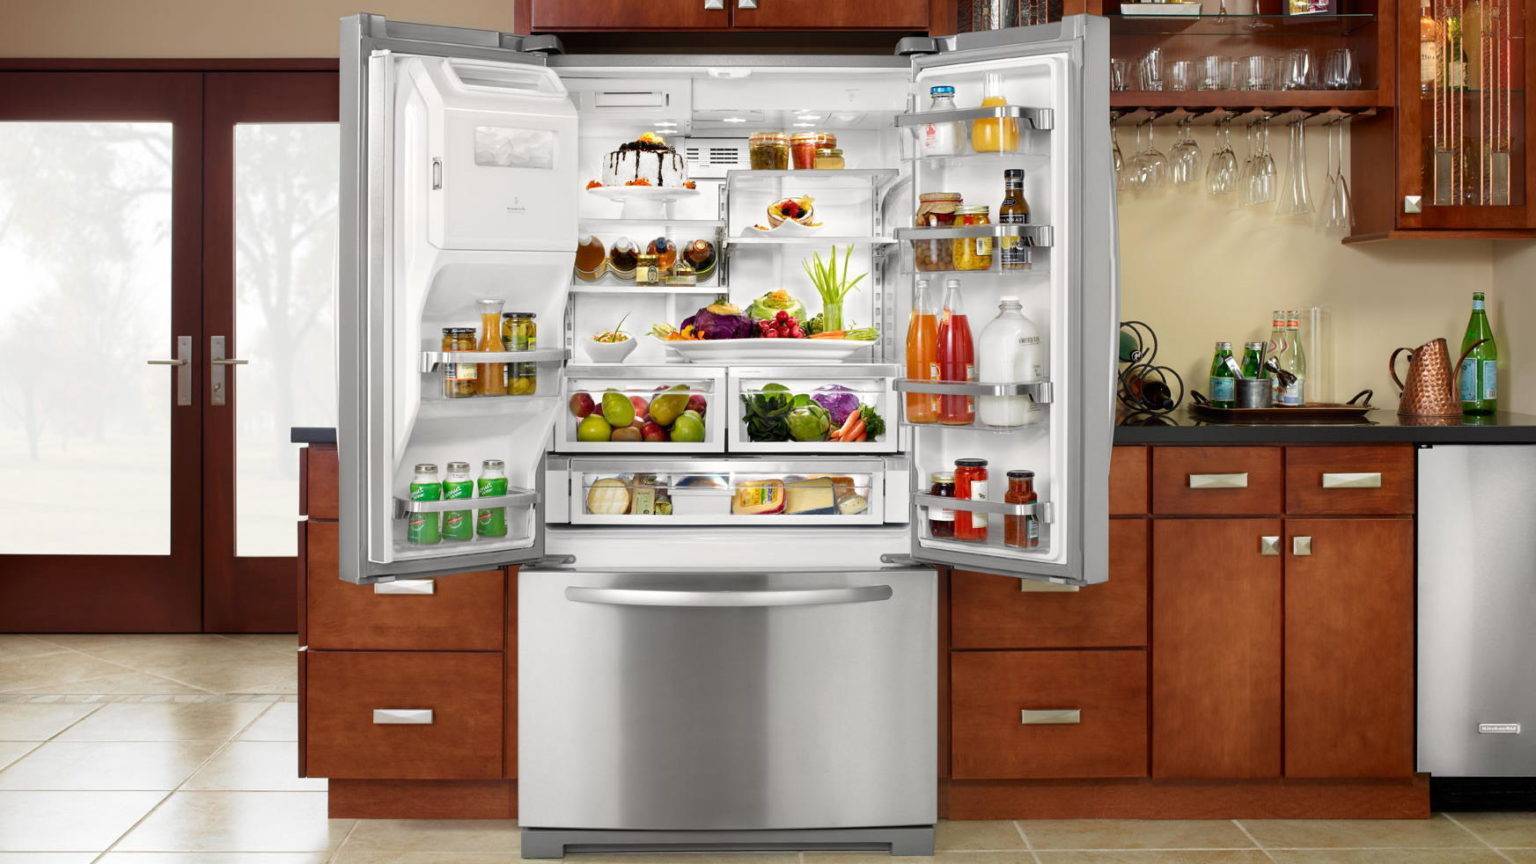 Холодильник. Холодильник широкий. Красивый холодильник. Холодильник на кухне.